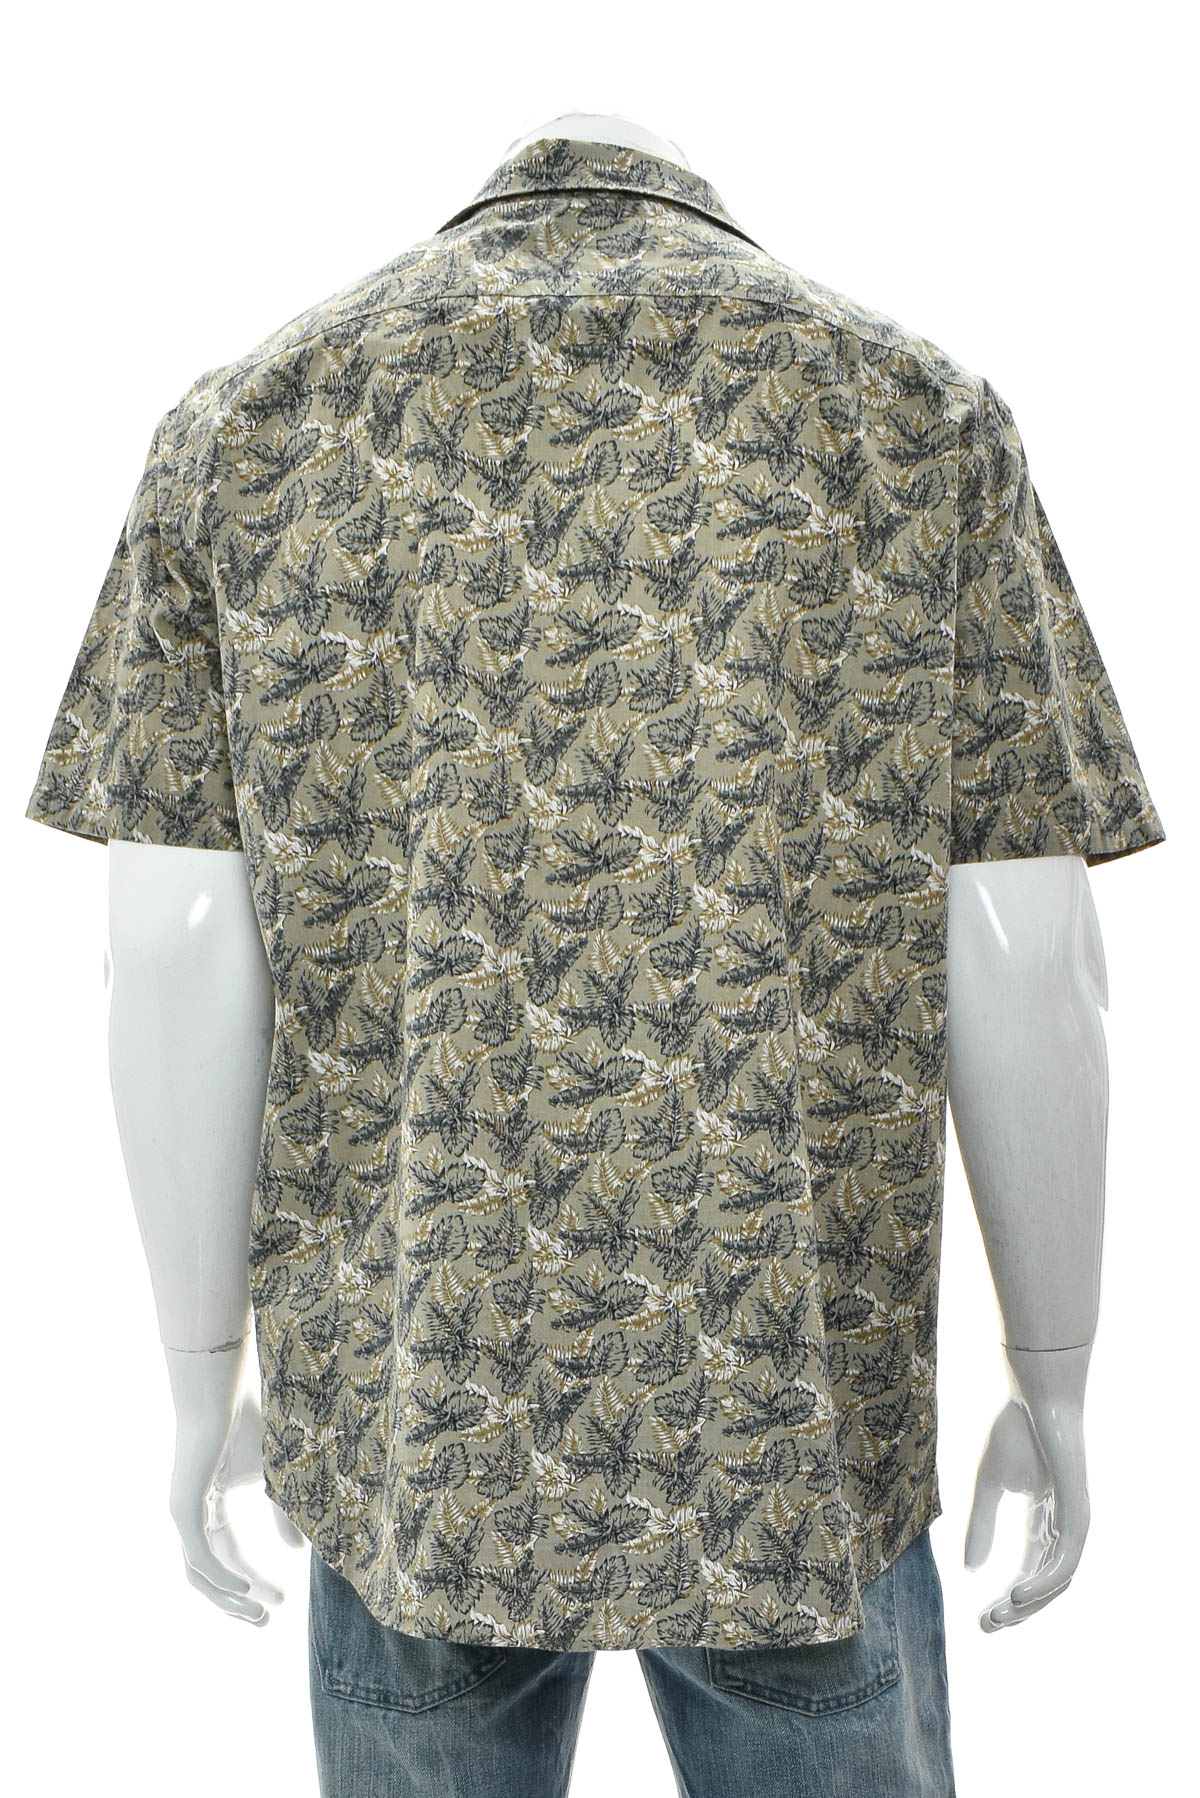 Men's shirt - IVEO by jbc - 1